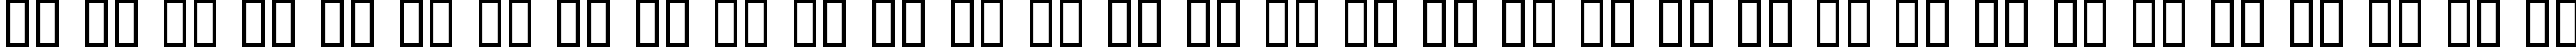 Пример написания русского алфавита шрифтом BD Bardust